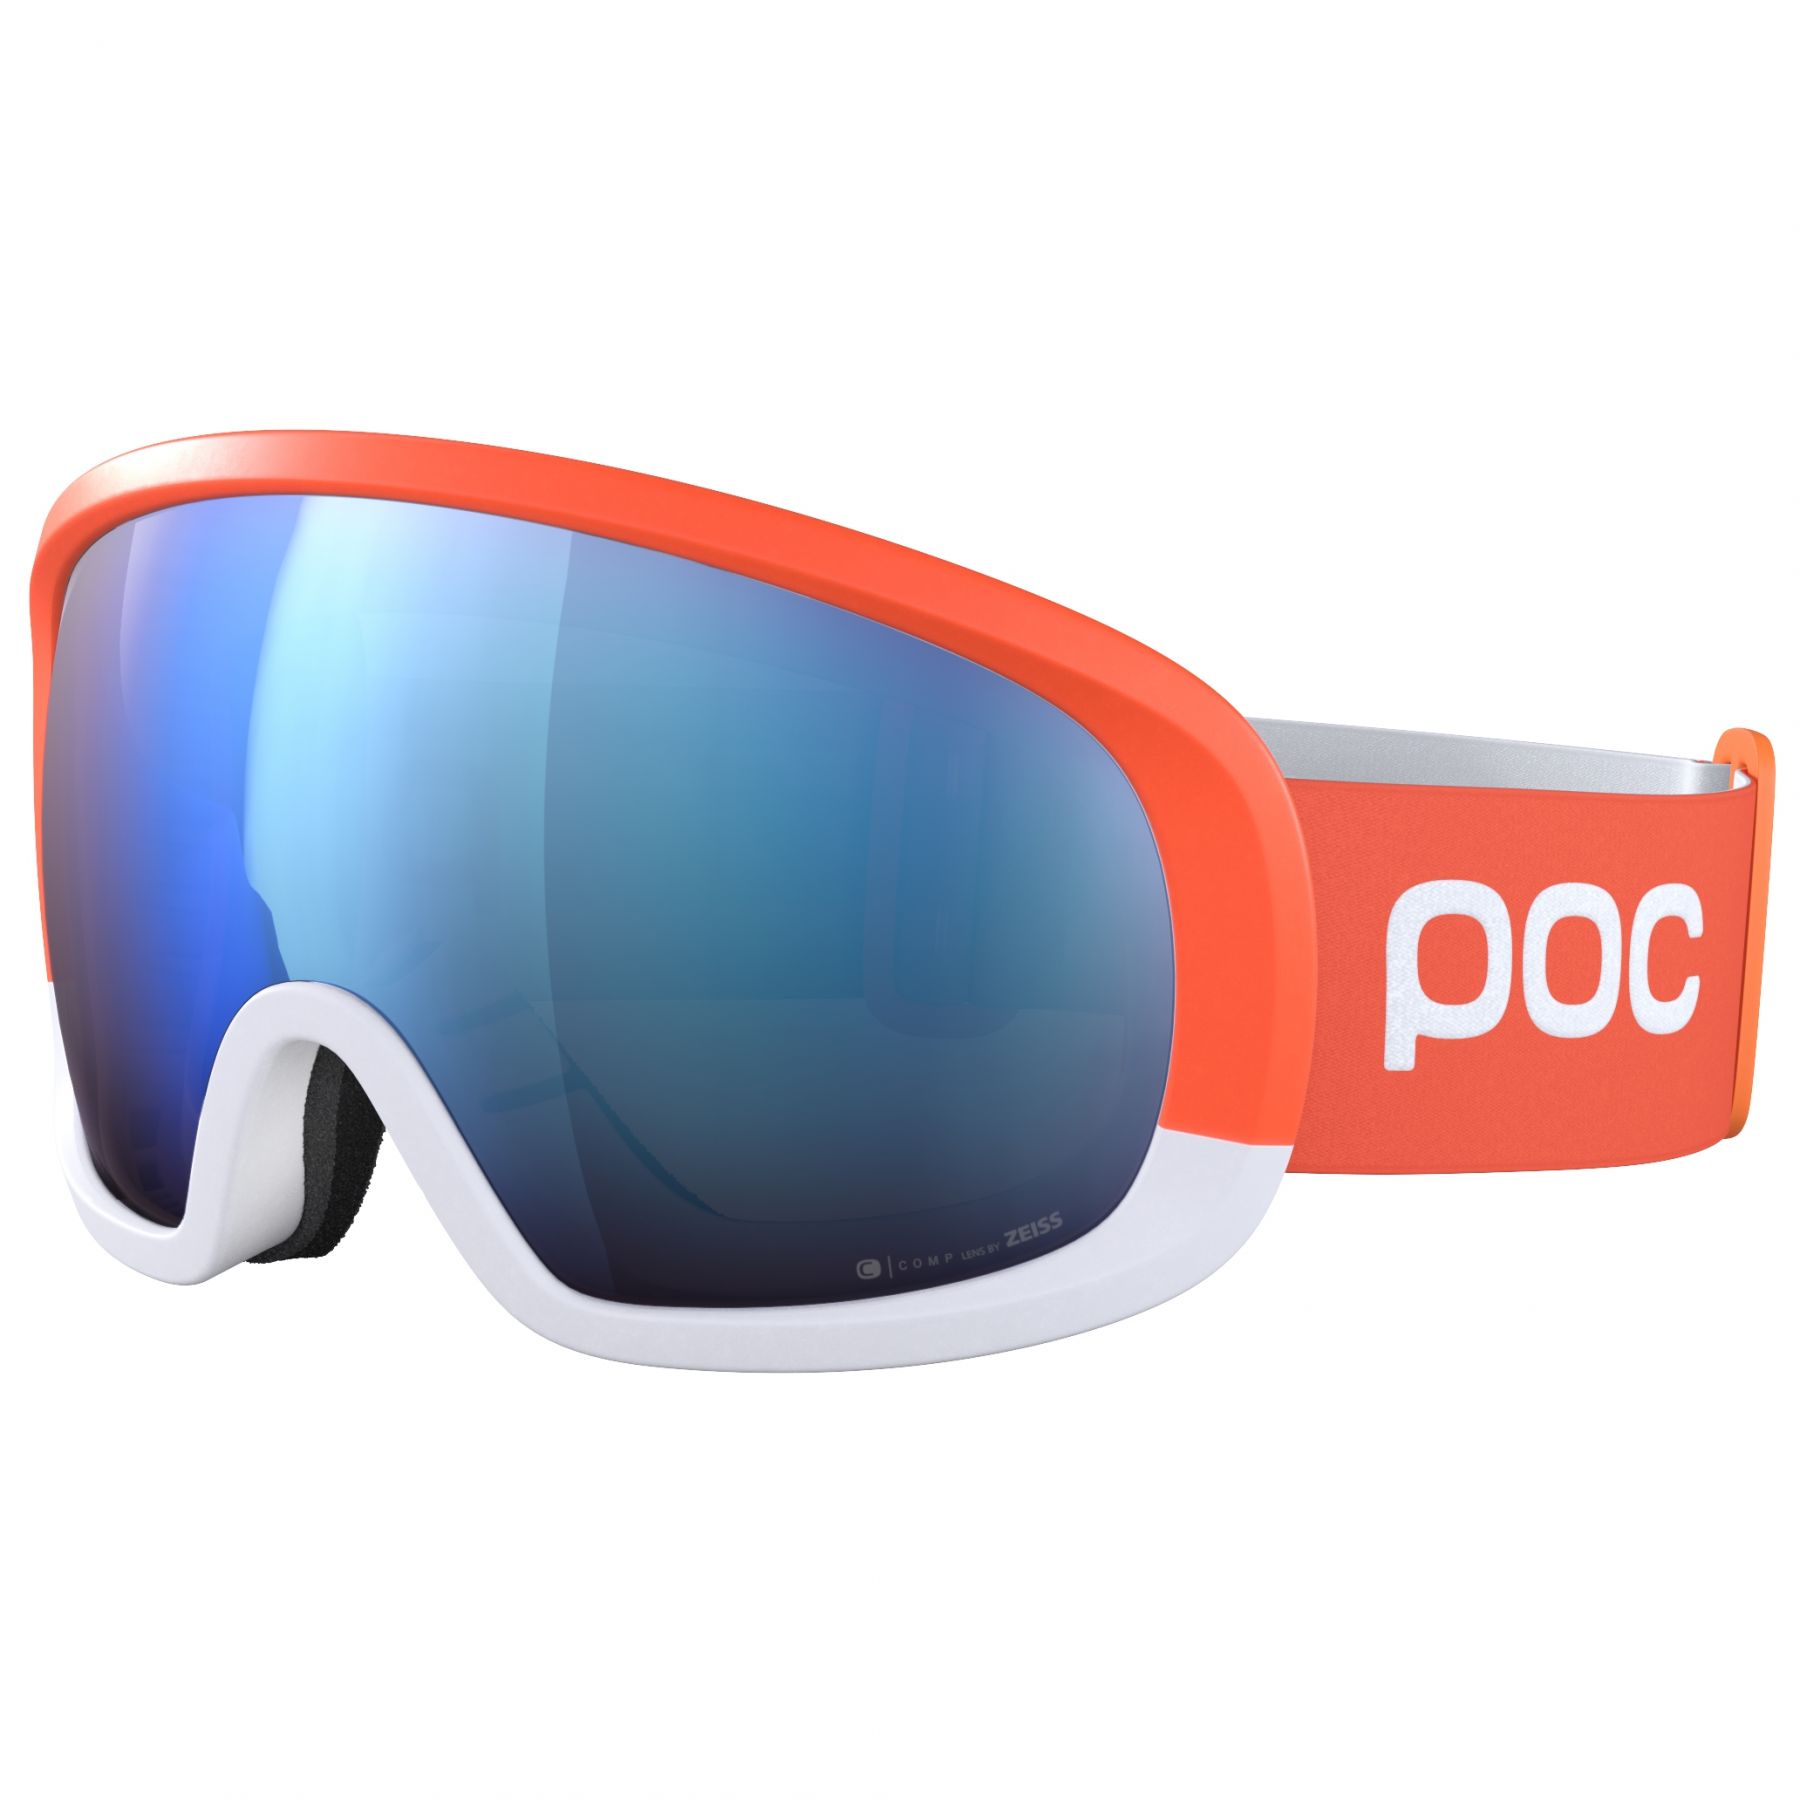 Billede af POC Fovea Mid Race, skibriller, zink orange/hydrogen white hos Skisport.dk